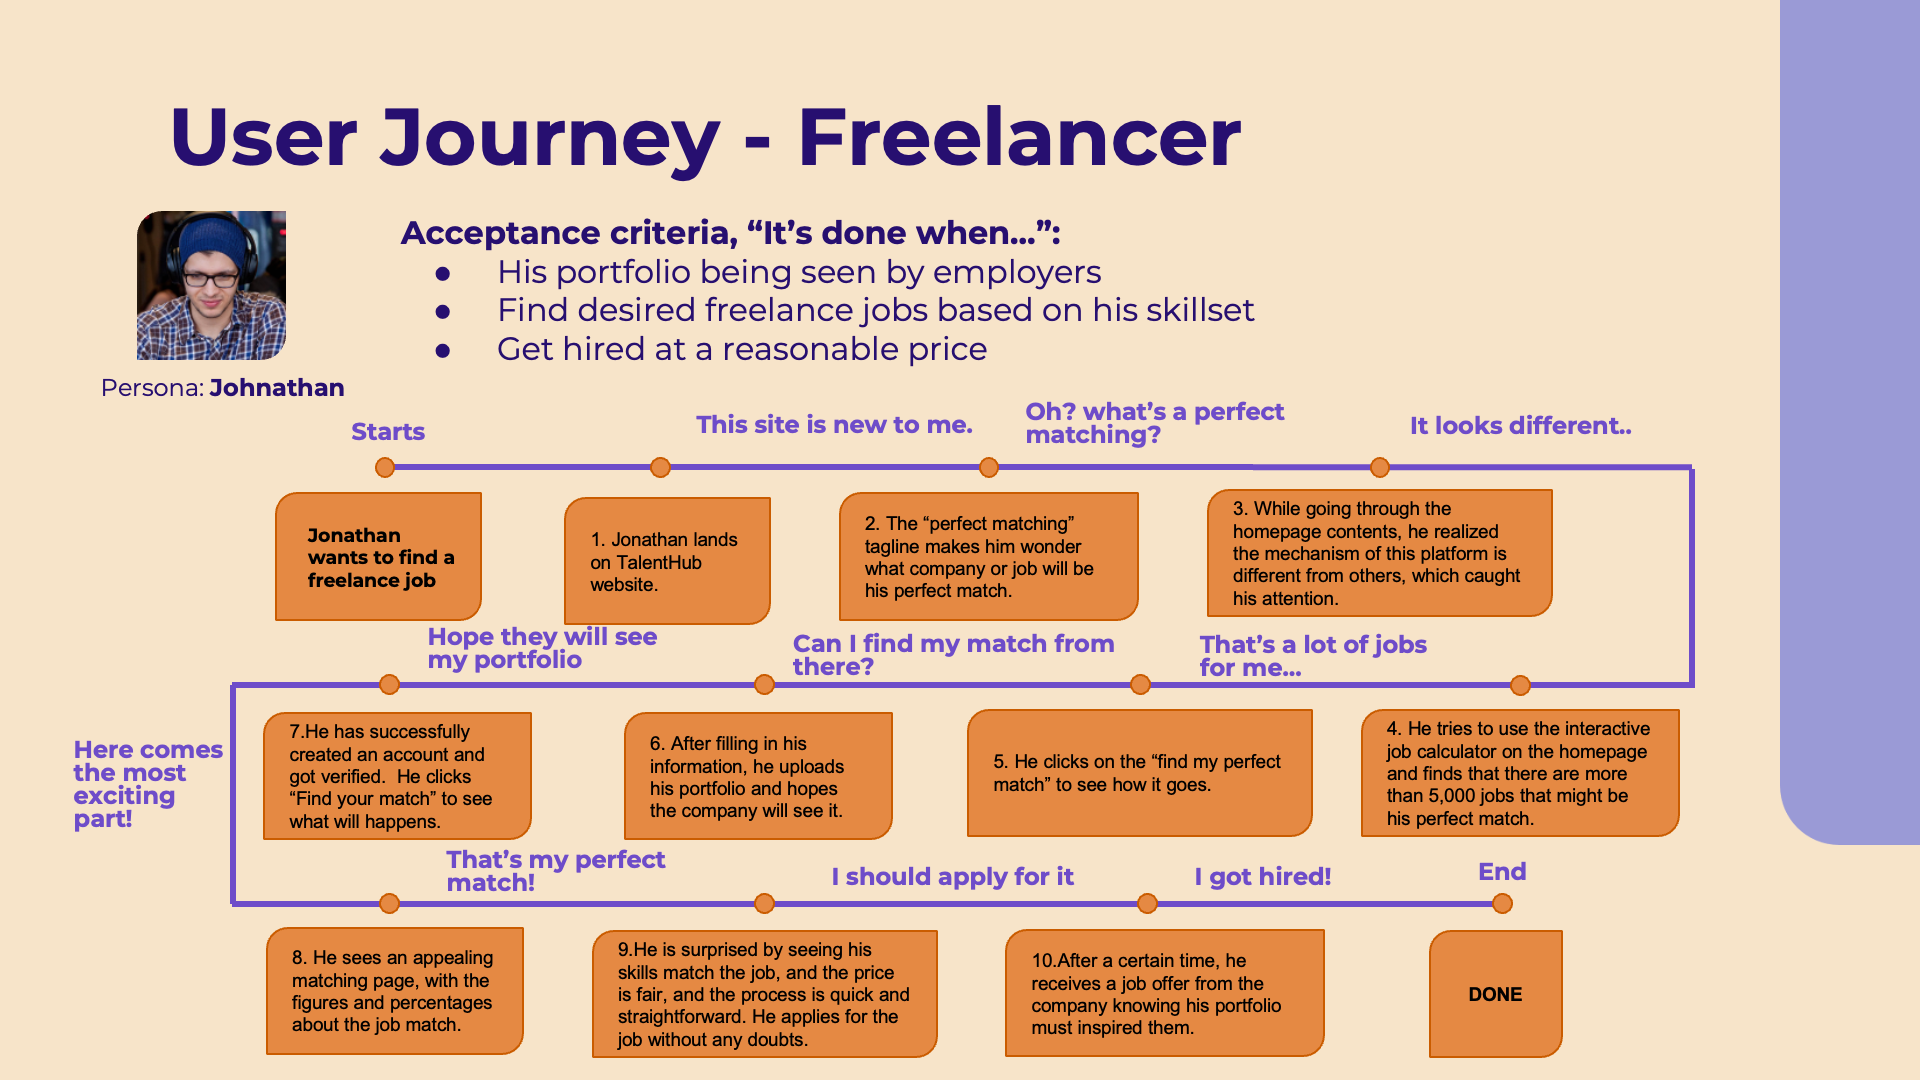 User Journey of a freelancer